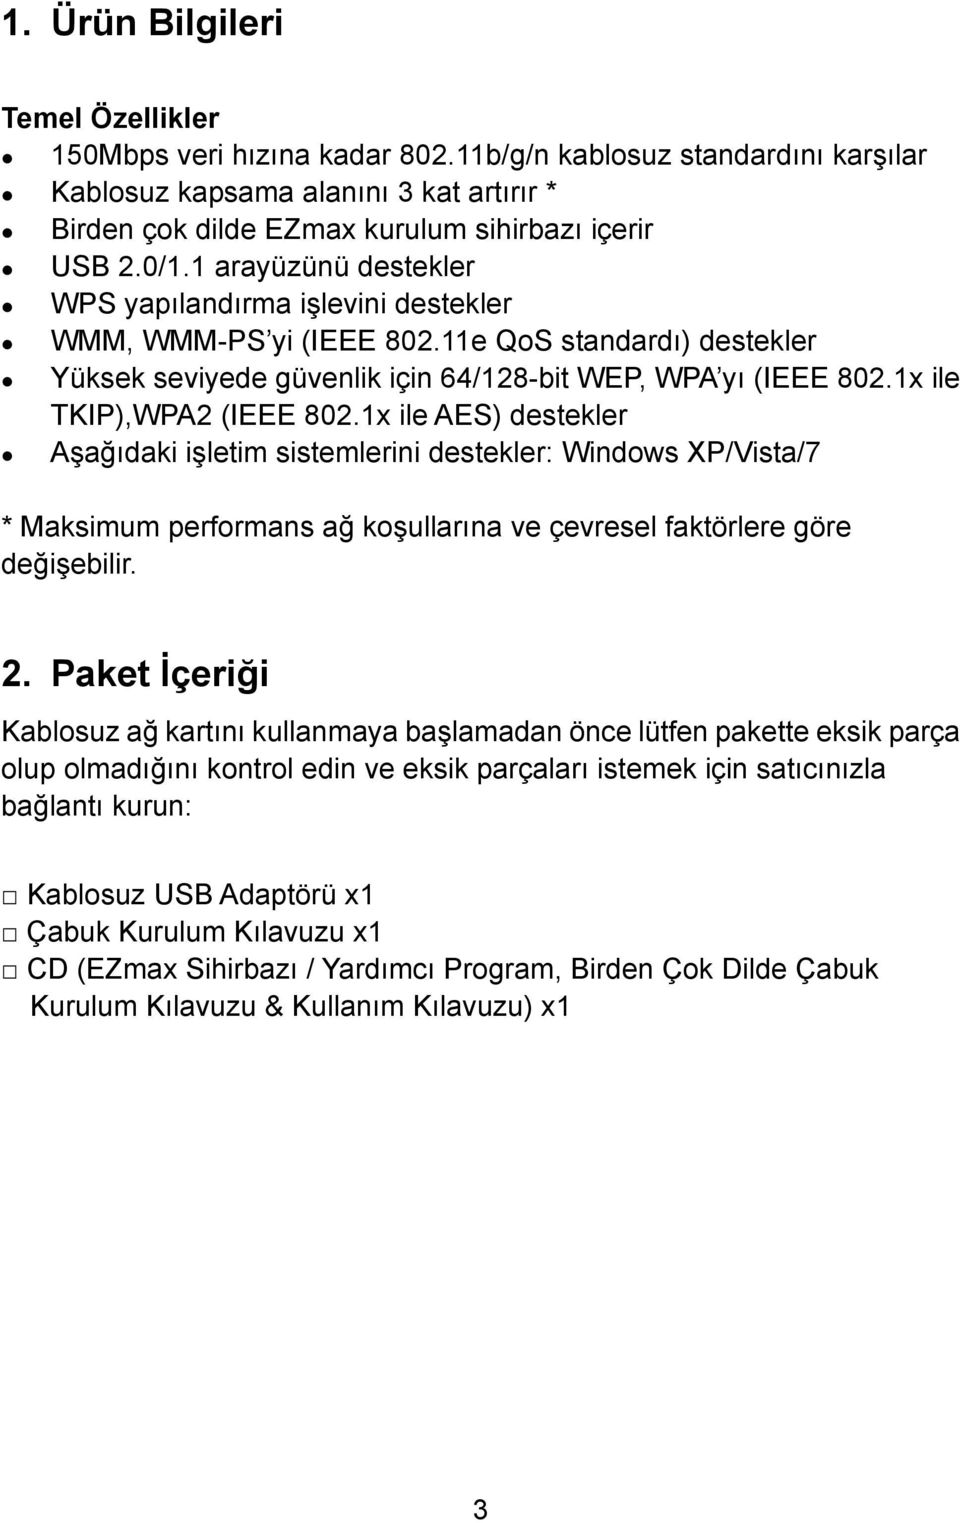 1x ile TKIP),WPA2 (IEEE 802.1x ile AES) destekler Aşağıdaki işletim sistemlerini destekler: Windows XP/Vista/7 * Maksimum performans ağ koşullarına ve çevresel faktörlere göre değişebilir. 2.